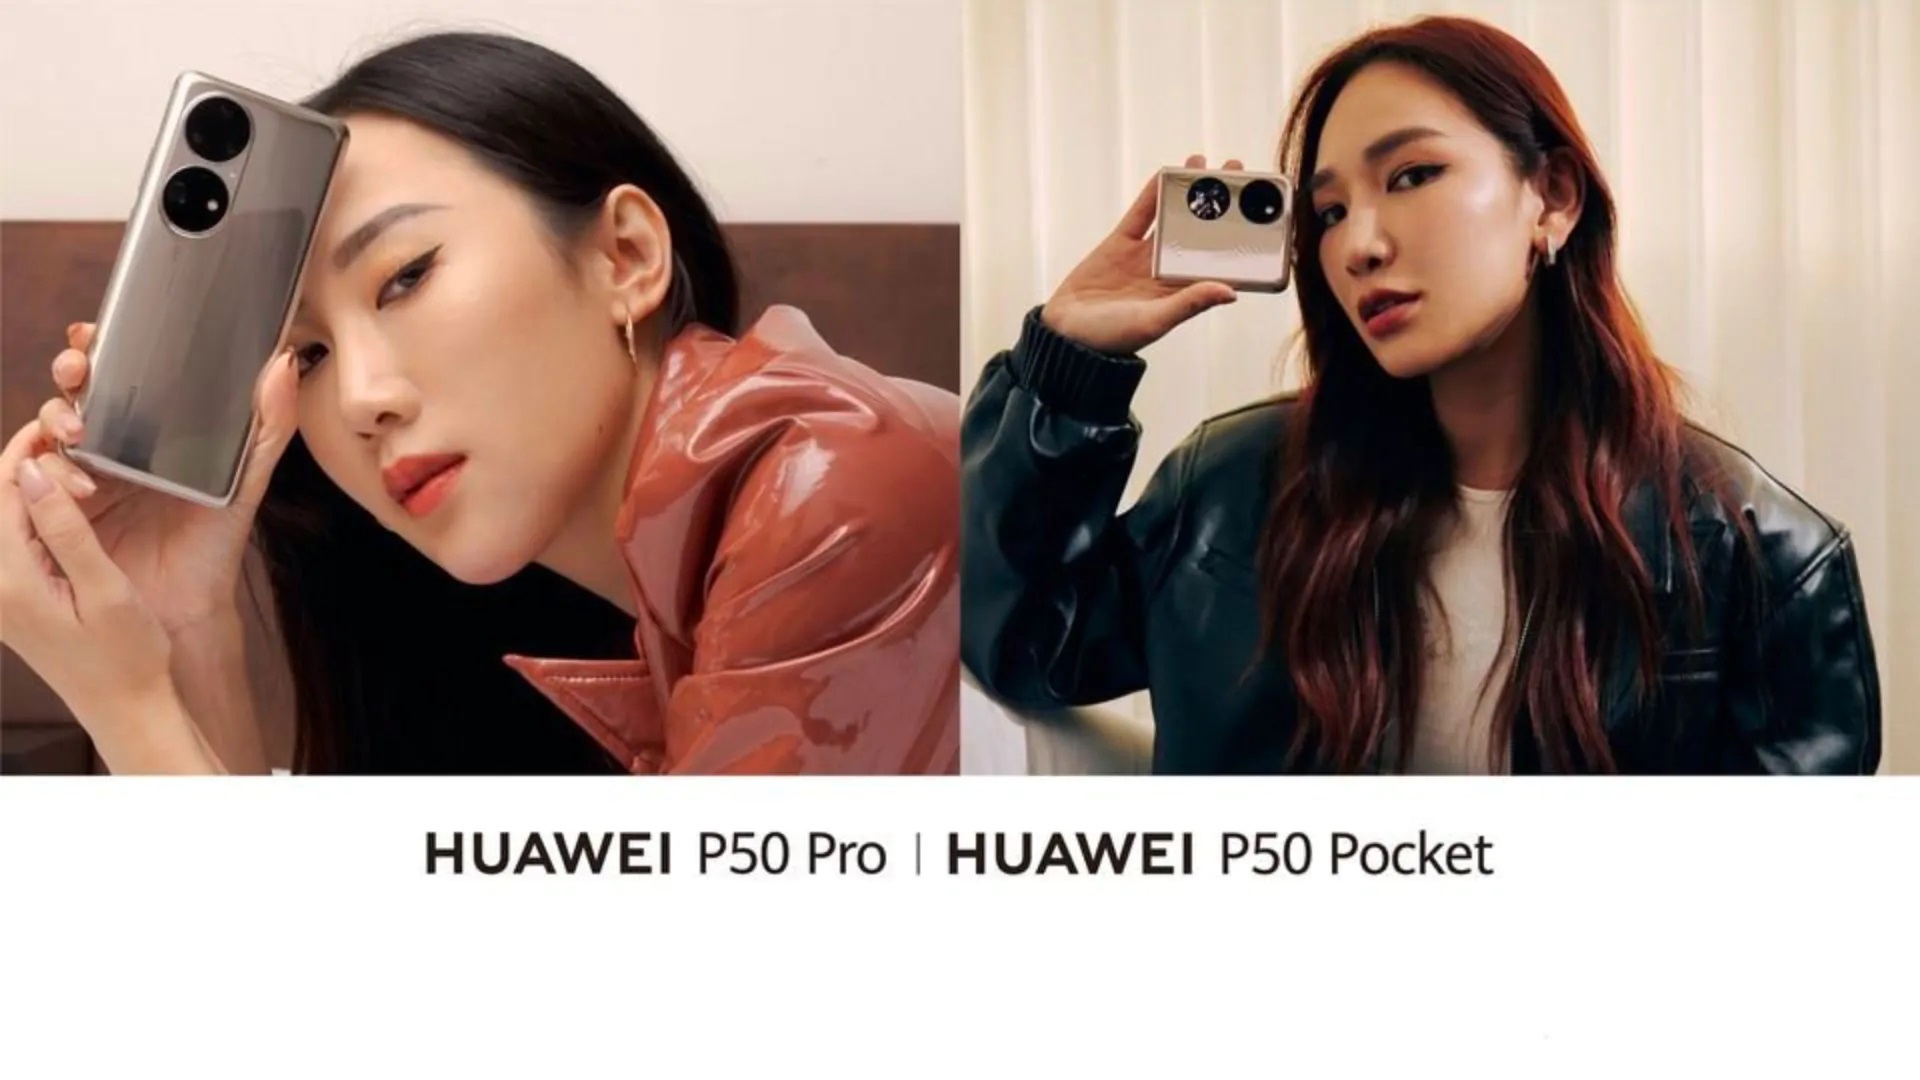 Дочекалися: Huawei представить флагман P50 Pro та складаний P50 Pocket на глобальному ринку 12 січня